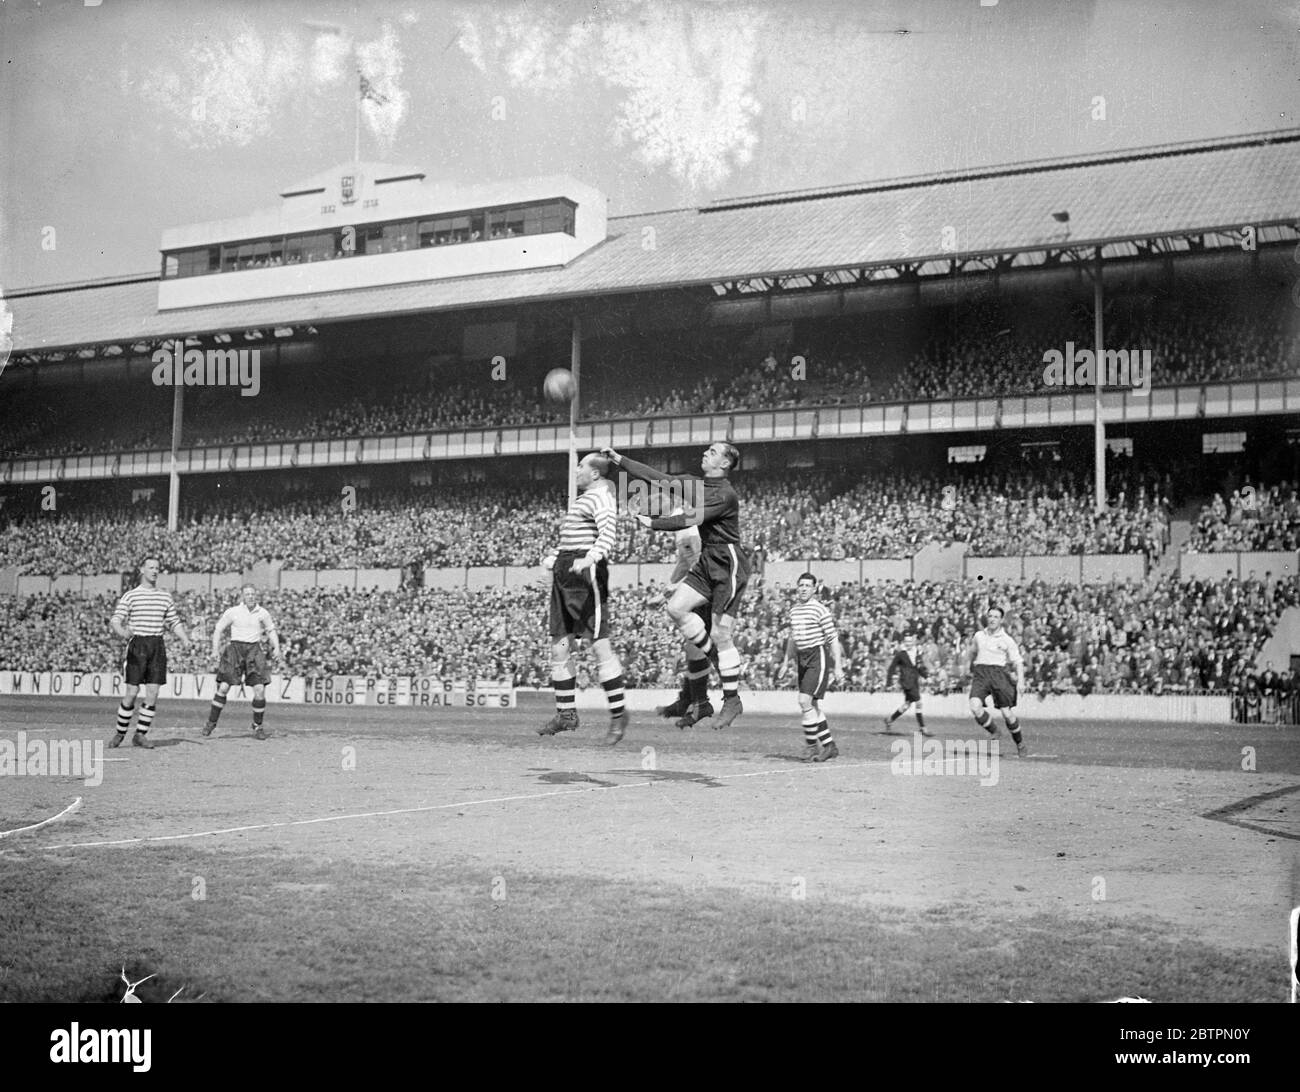 Visites complètes Spurs. Tottenham Hotspur et Fulham se sont rencontrés dans le Derby de deuxième division de Londres à White Hart Lane. Photos montrant Tootill, gardien de but de Fulham, en se dévalant de l'attaque de Spurs. Couleurs blanc. 24 avril 1937 Banque D'Images